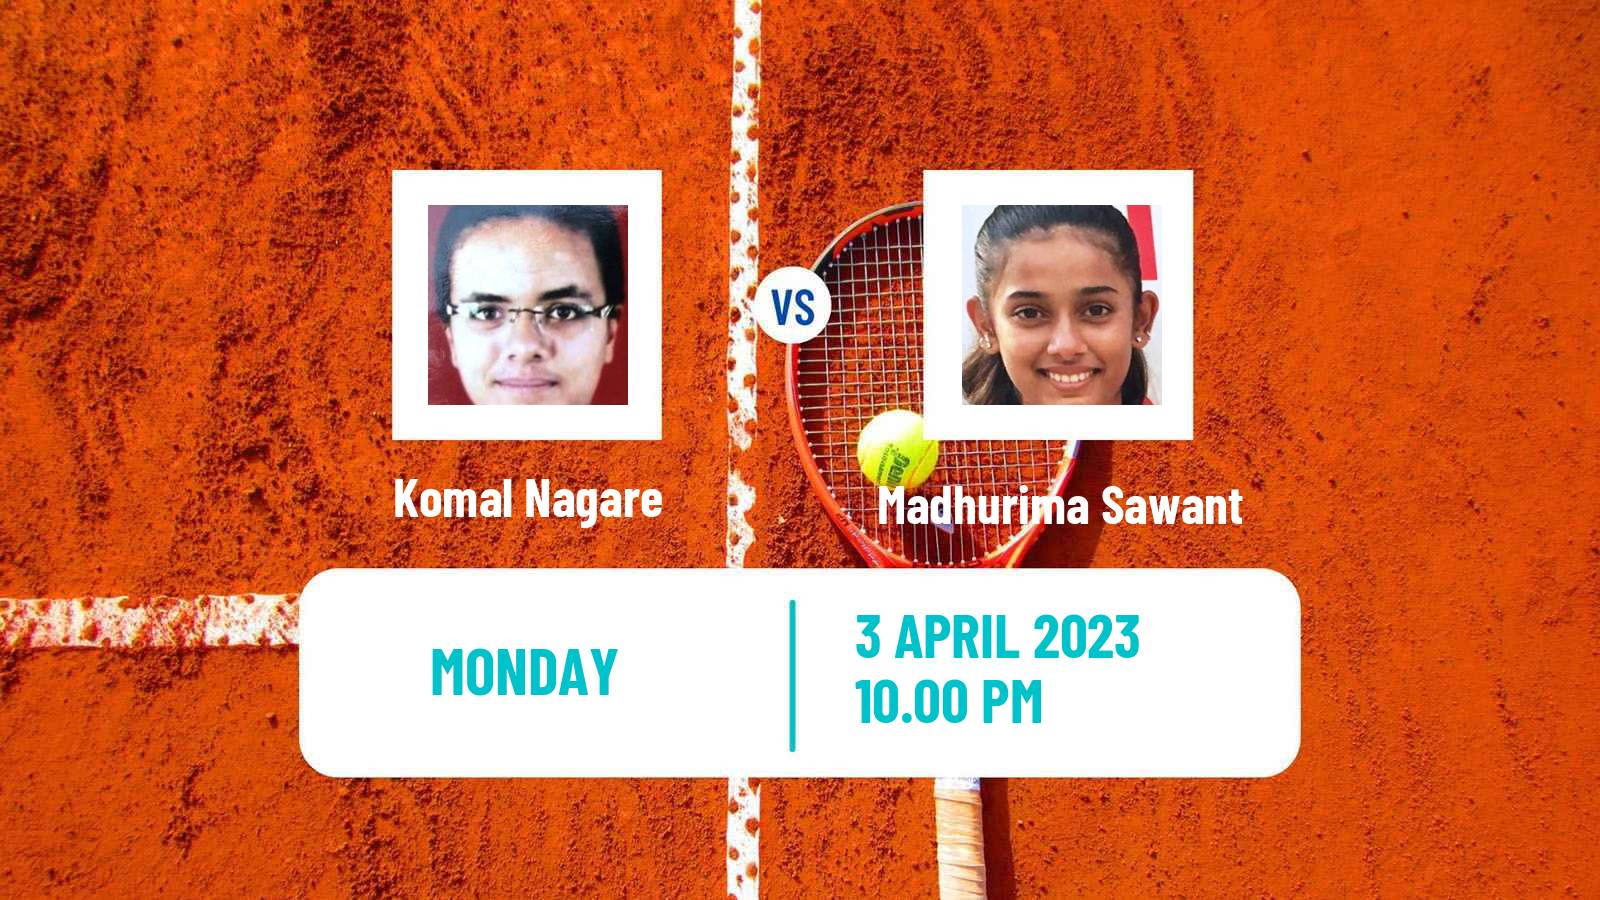 Tennis ITF Tournaments Komal Nagare - Madhurima Sawant